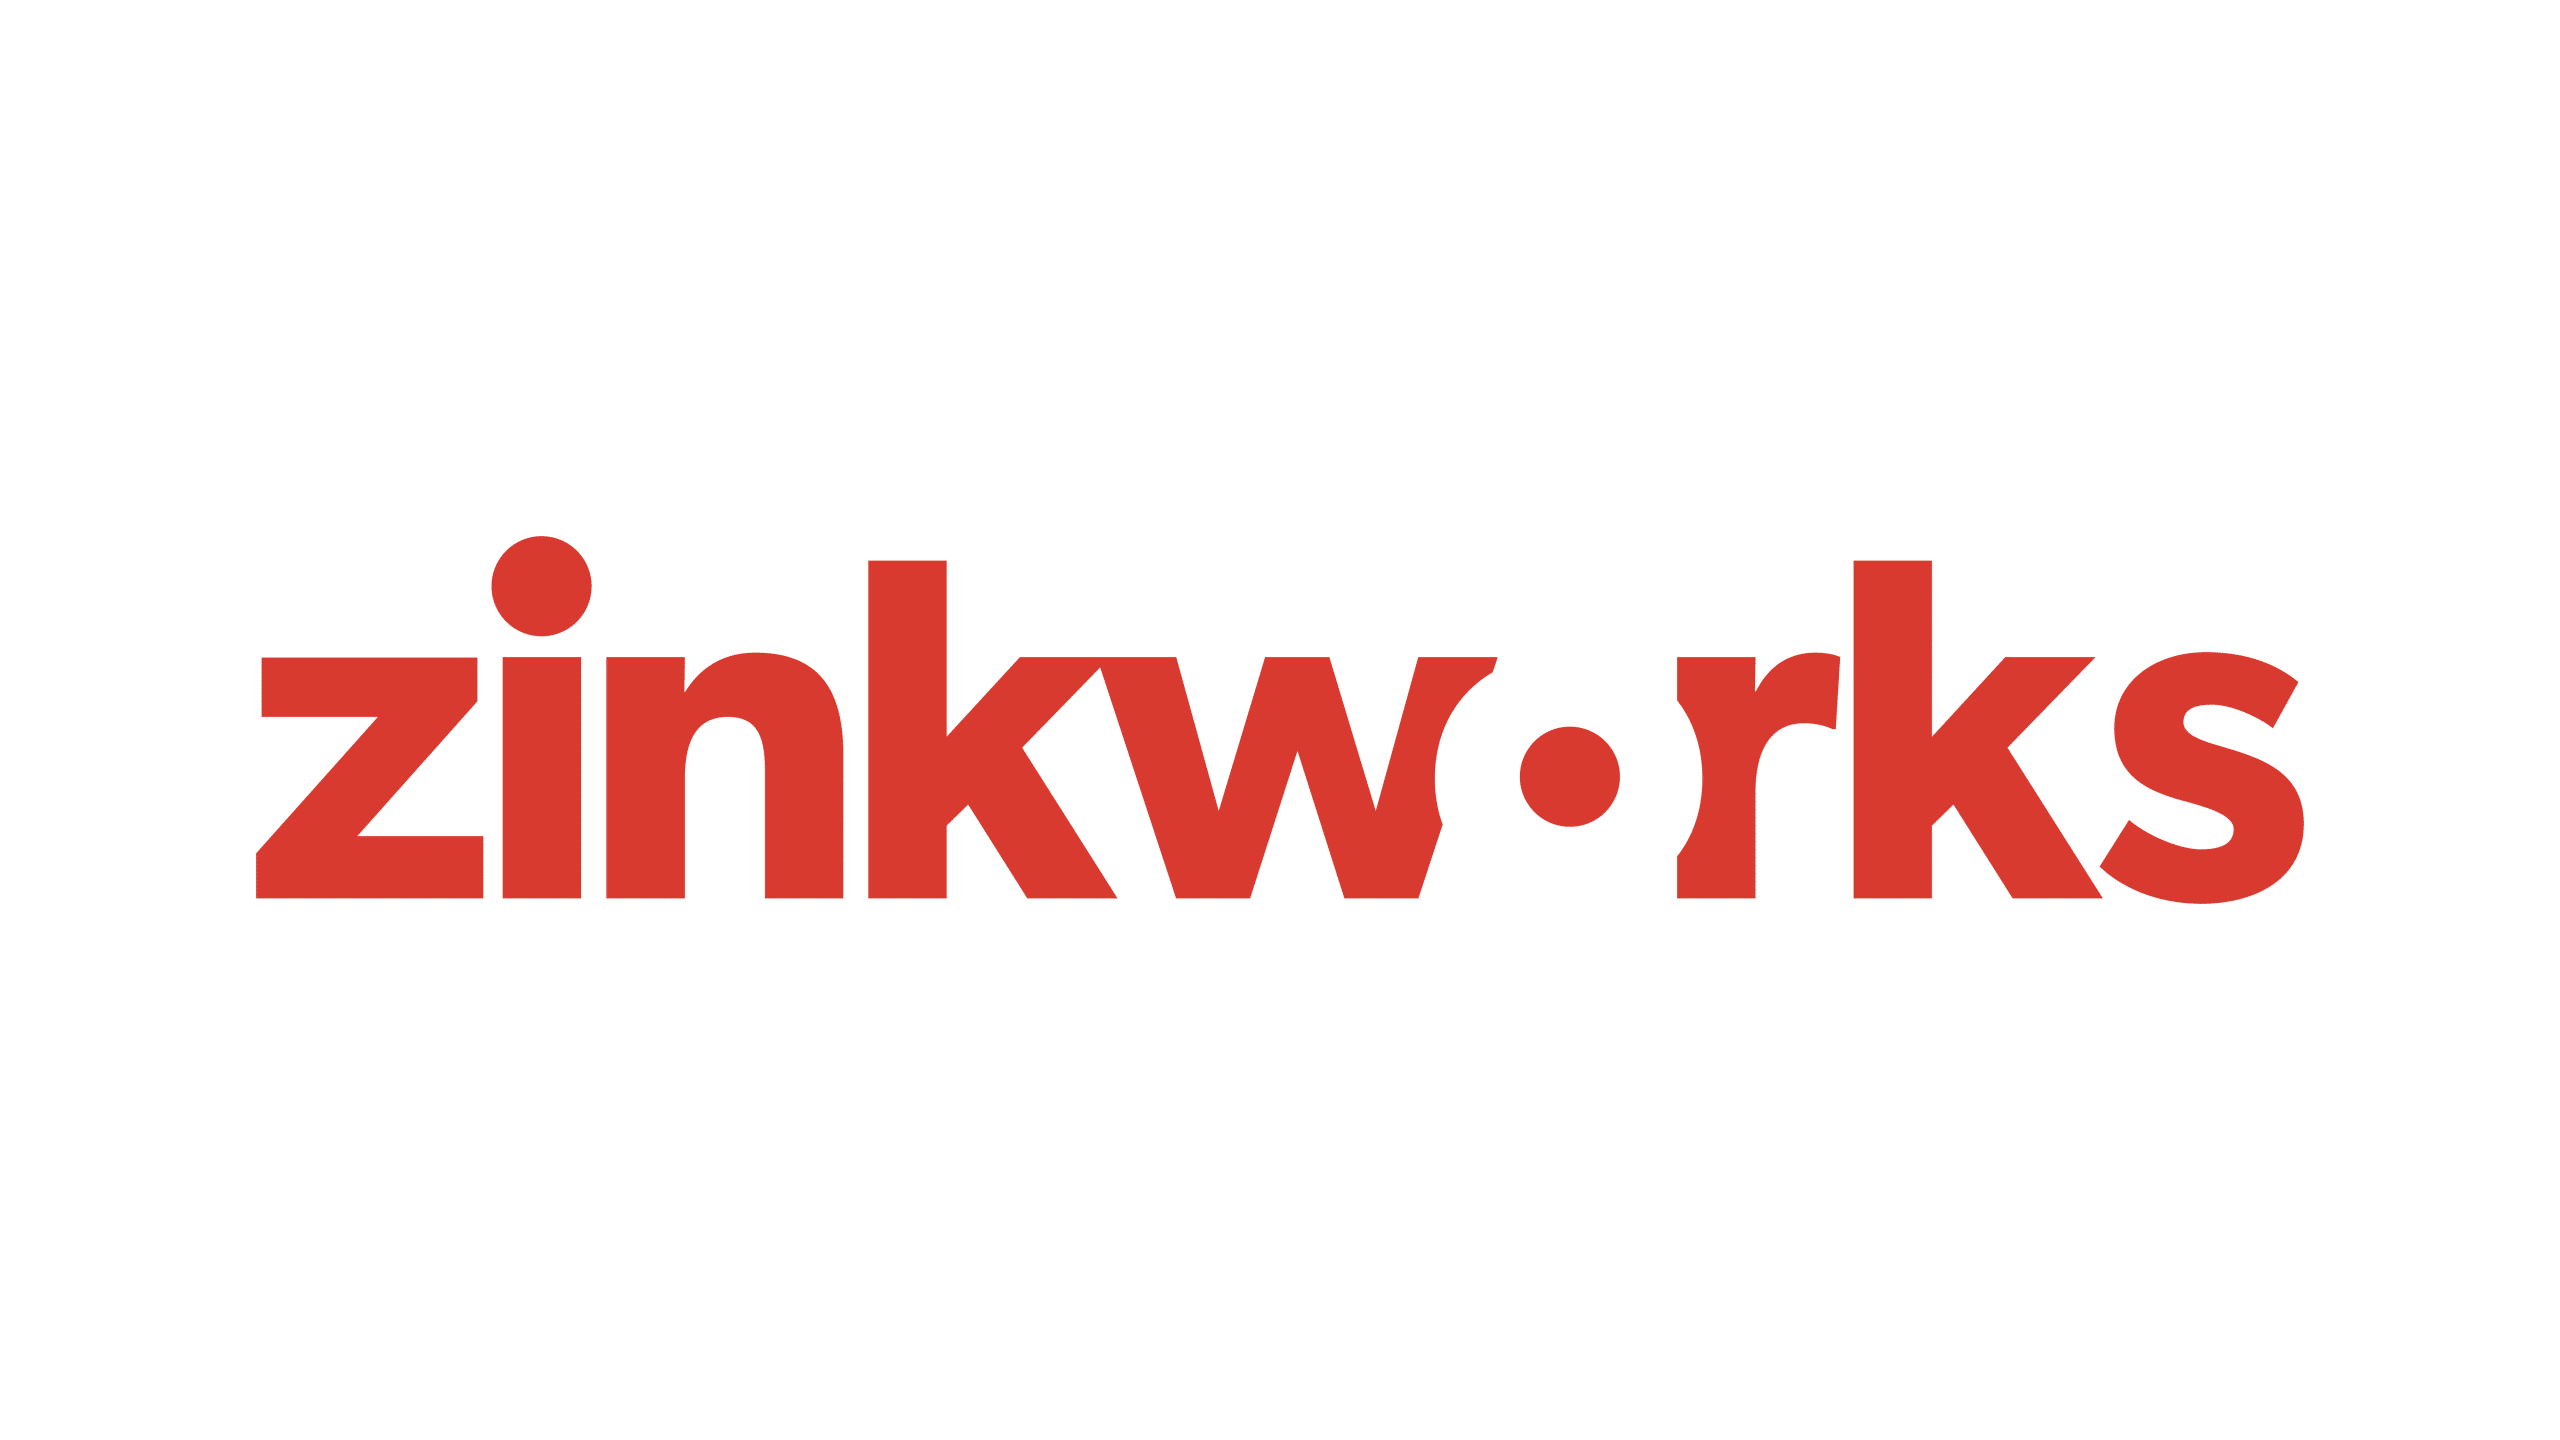 Zinkworks